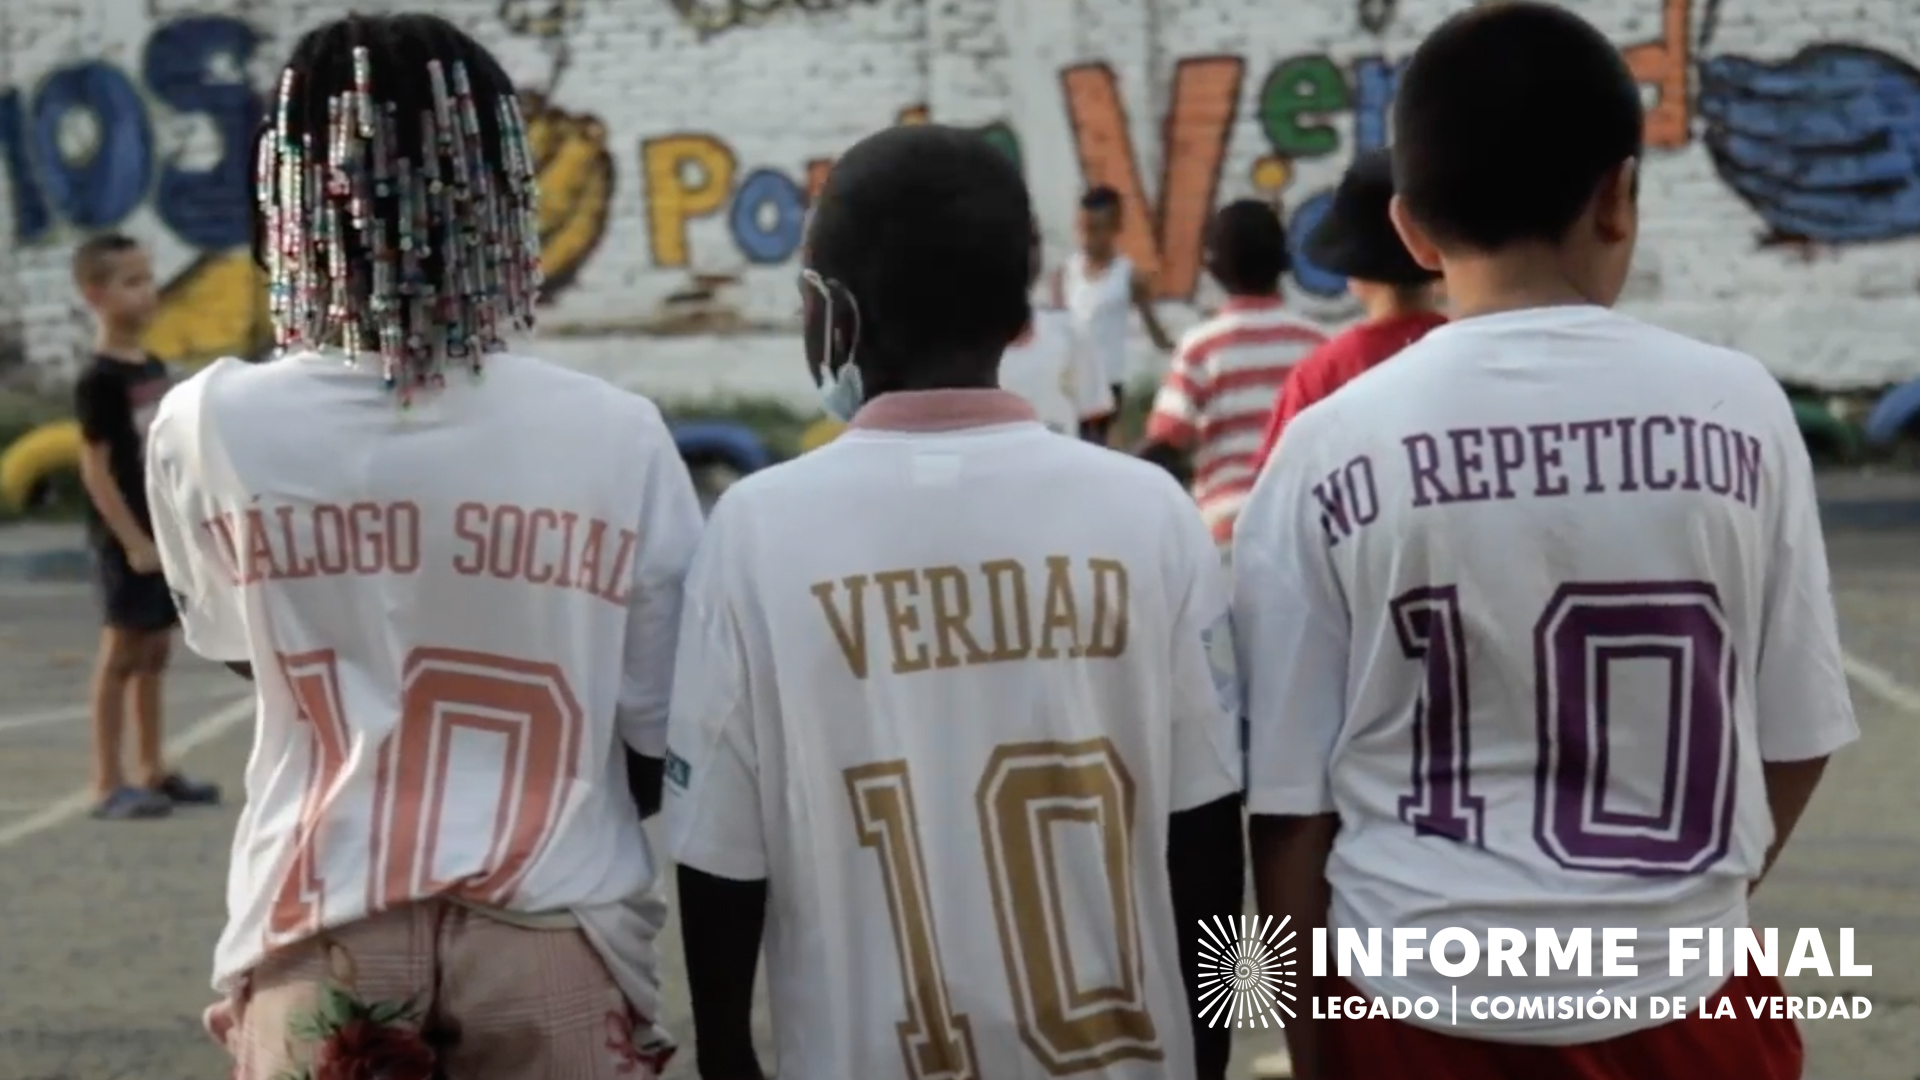 3 jóvenes de espalda, en sus camisetas las palabras: Diálogo social, Verdad, no repetición